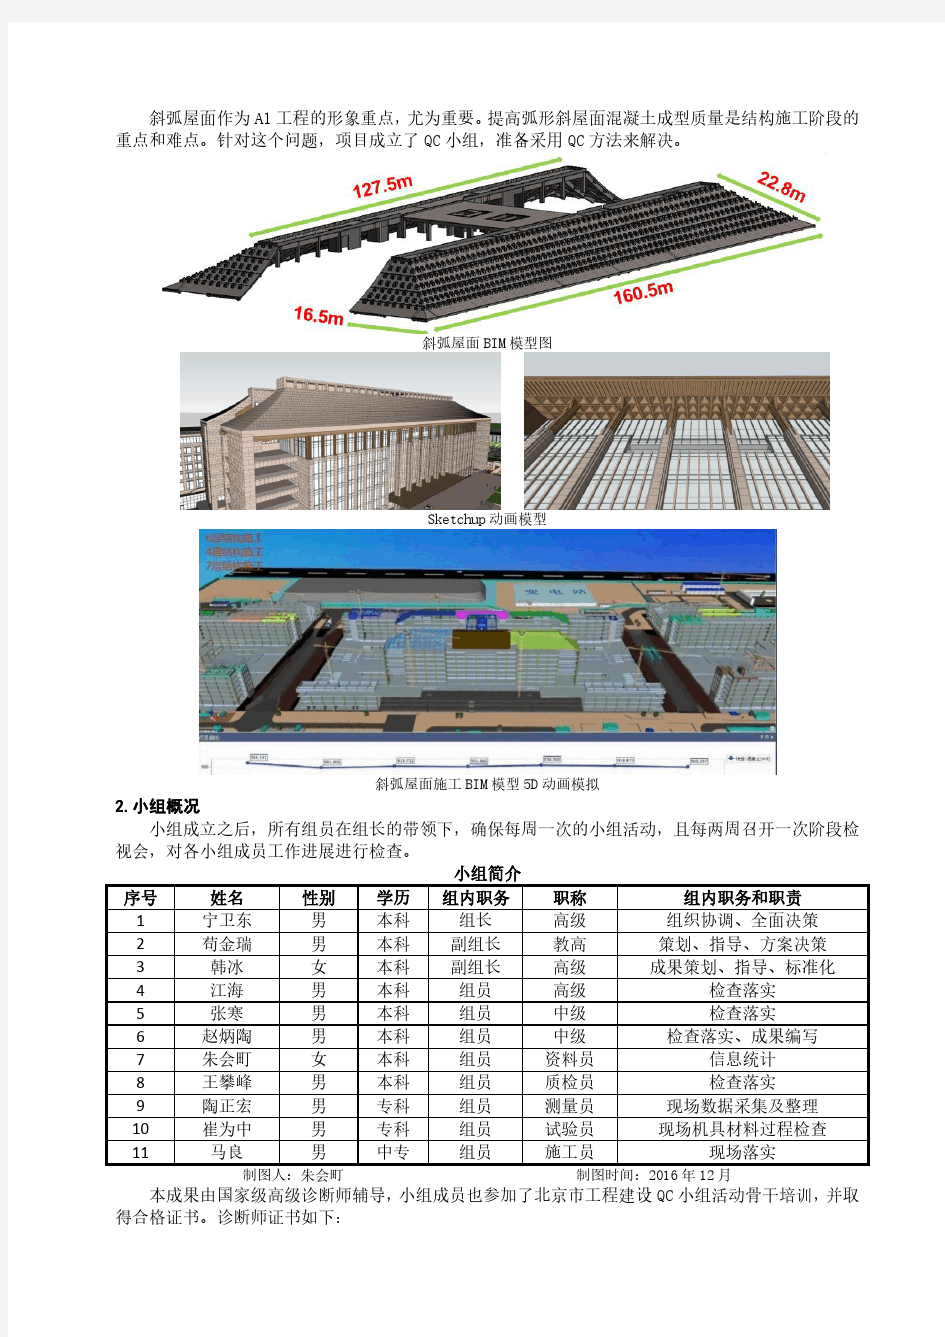 2017qc01001北京城建集团有限责任公司